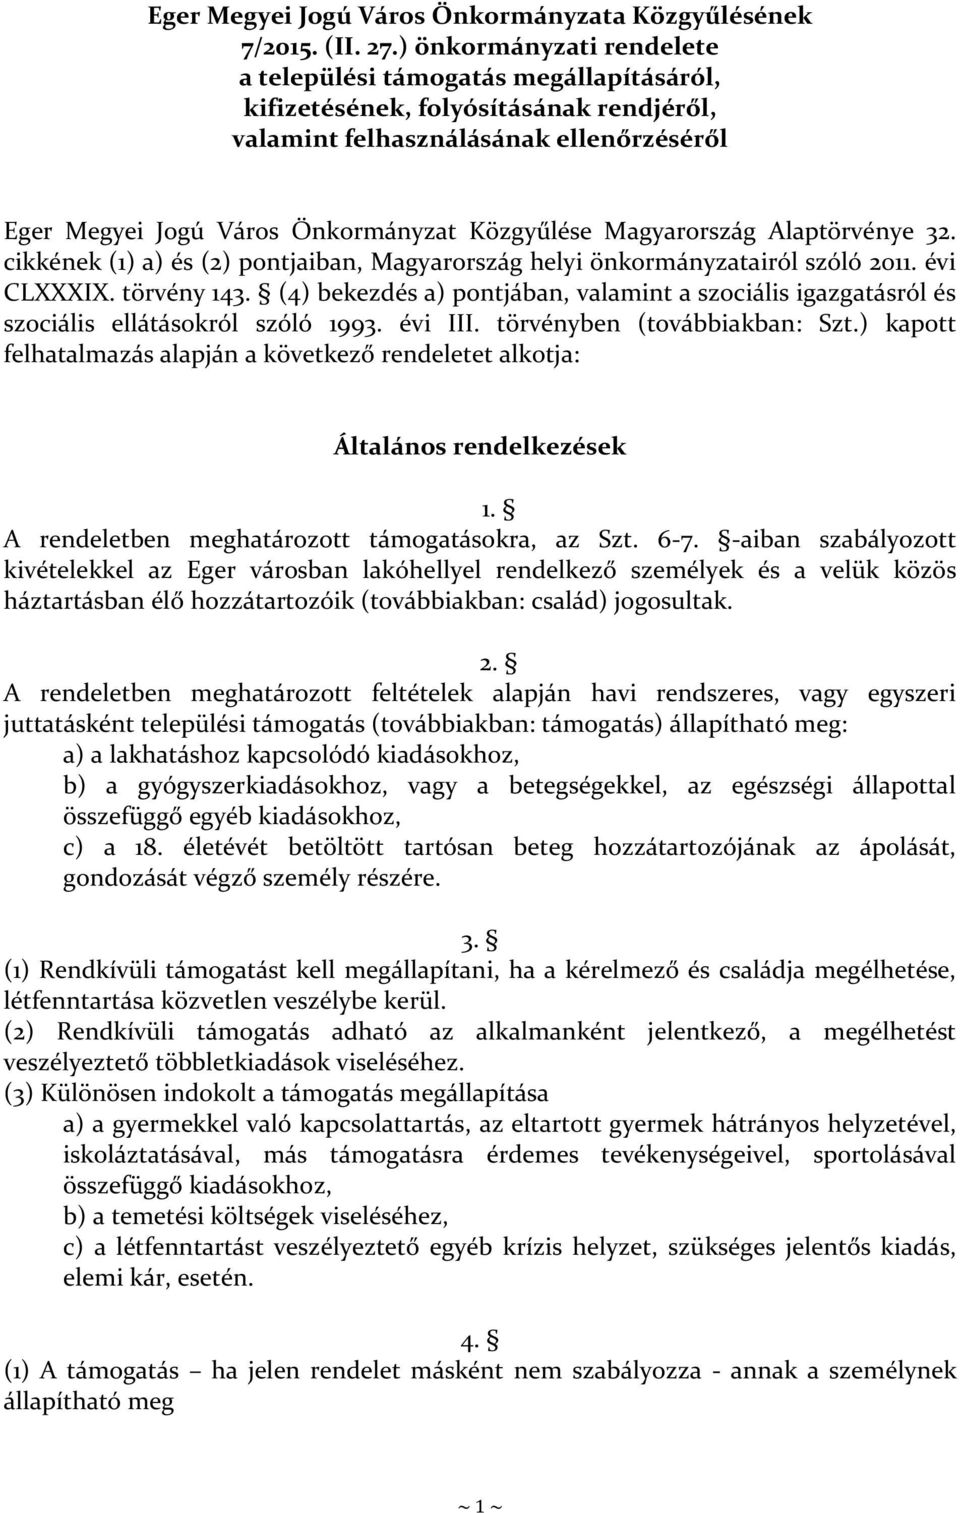 Magyarország Alaptörvénye 32. cikkének (1) a) és (2) pontjaiban, Magyarország helyi önkormányzatairól szóló 2011. évi CLXXXIX. törvény 143.